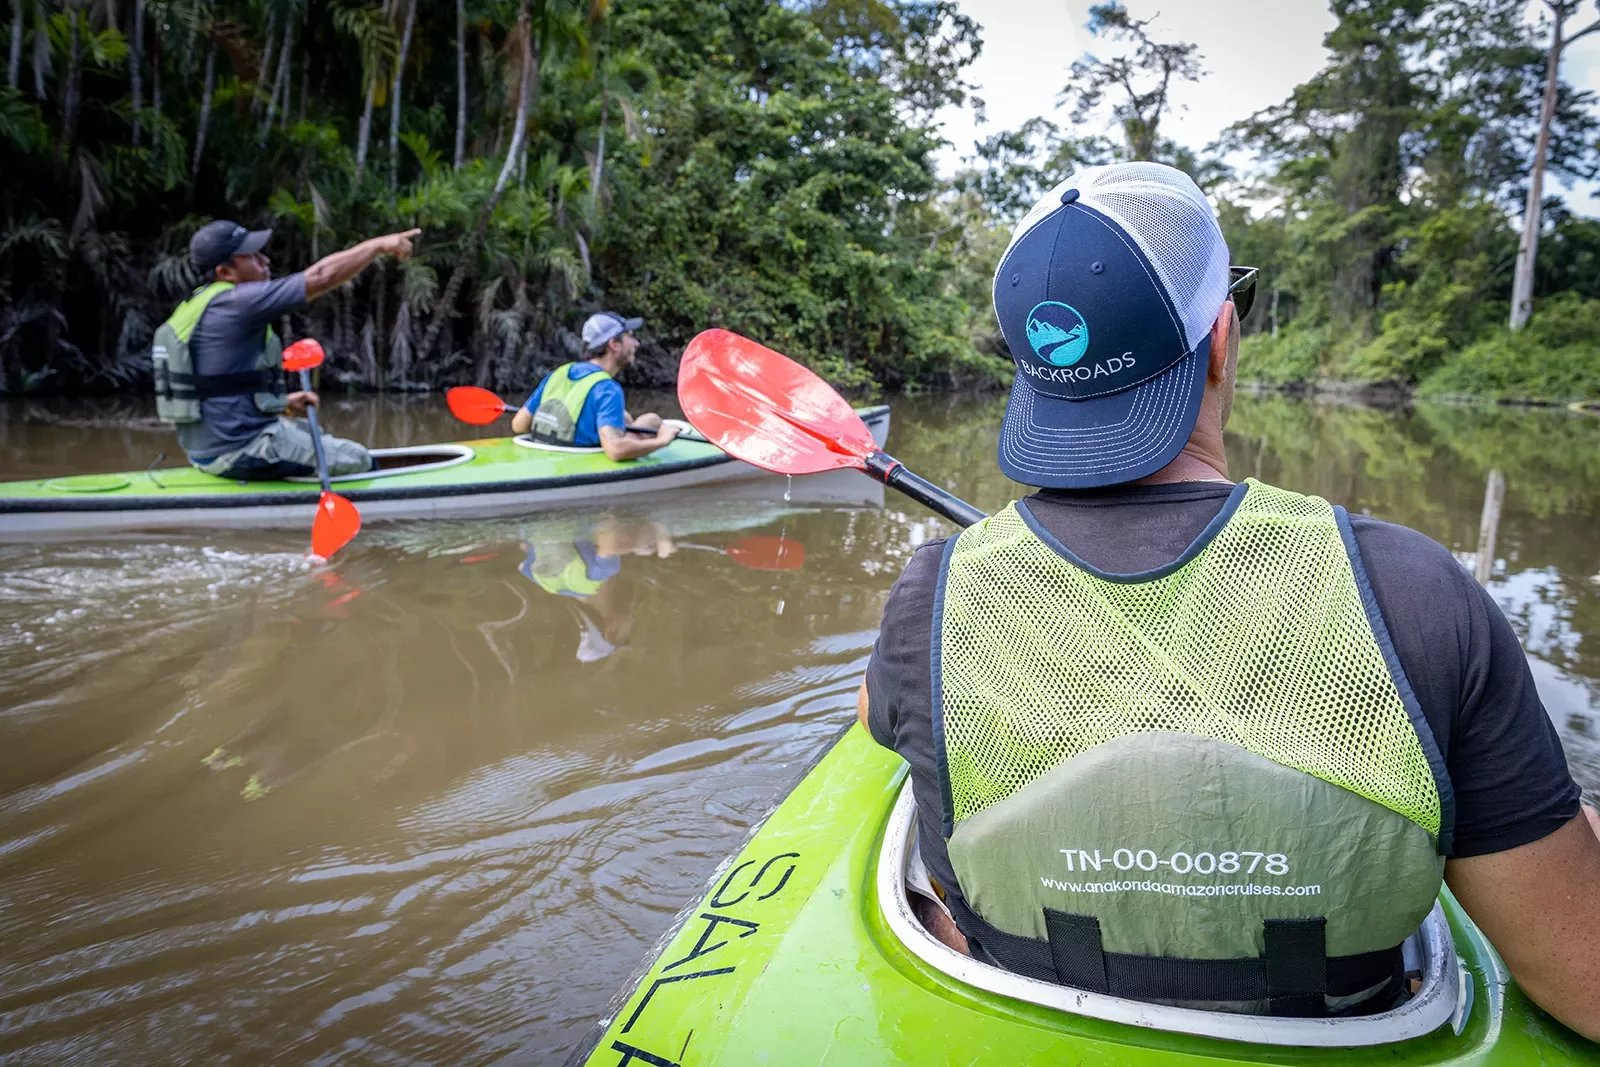 Kayaking Amazon River